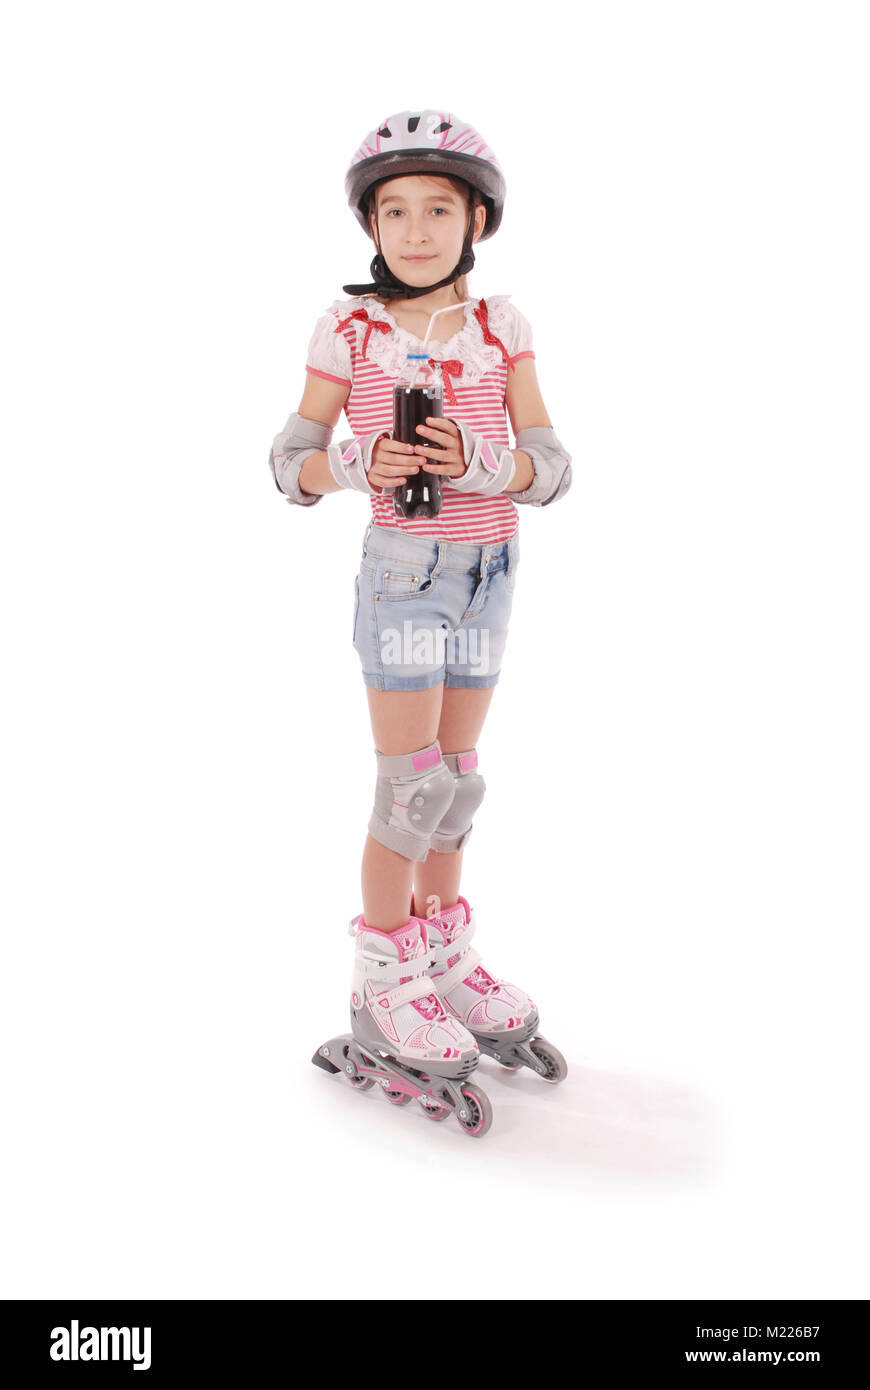 Linda chica en patines contra el fondo blanco. Foto de stock